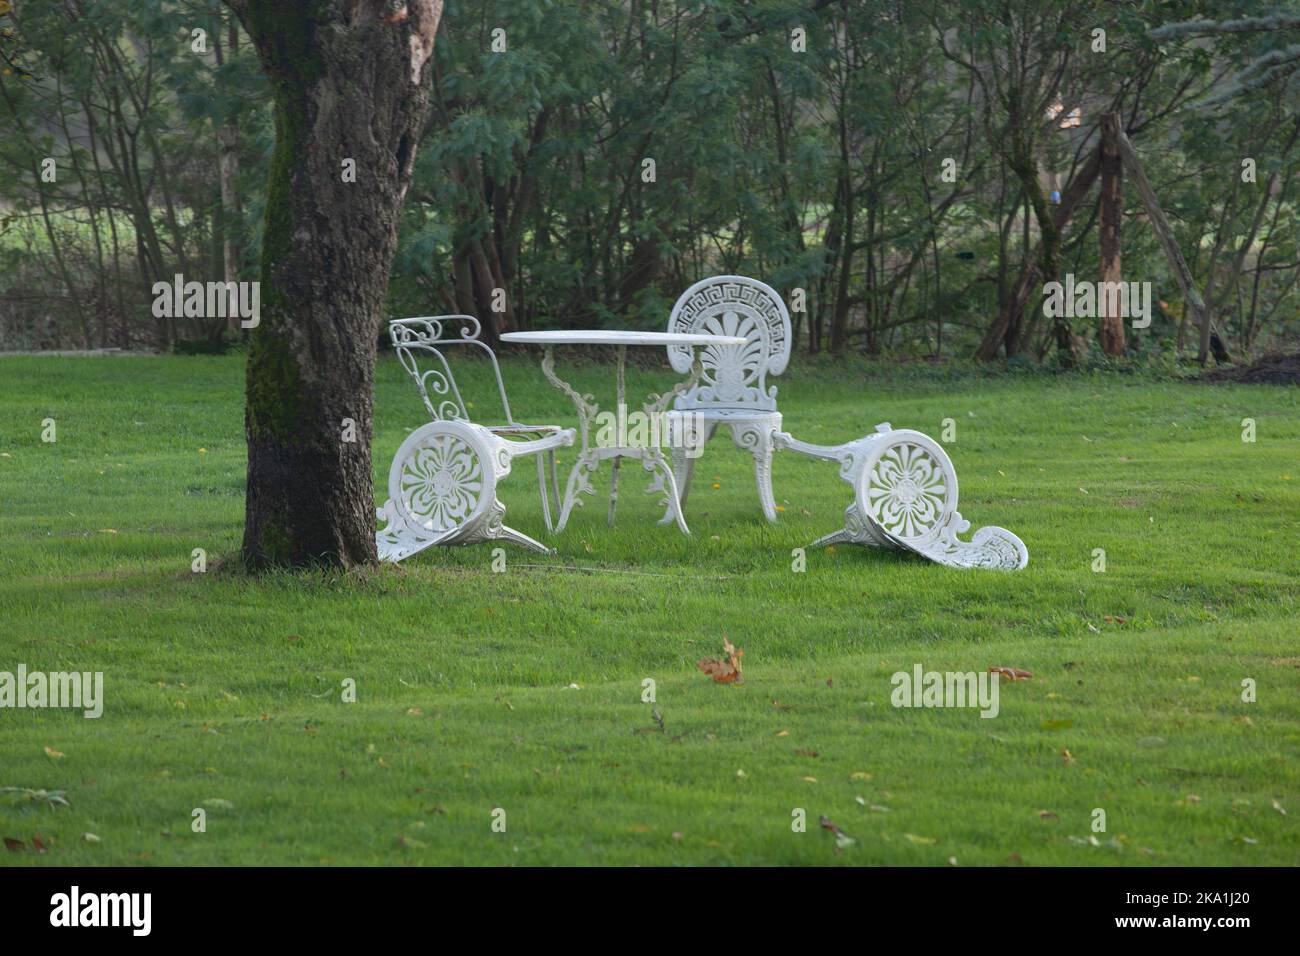 Der Herbstwind schlug zwei der vier weißen Stühle im Garten nieder. Aus diesem Foto entsteht ein Gefühl des Loslassens. Stockfoto